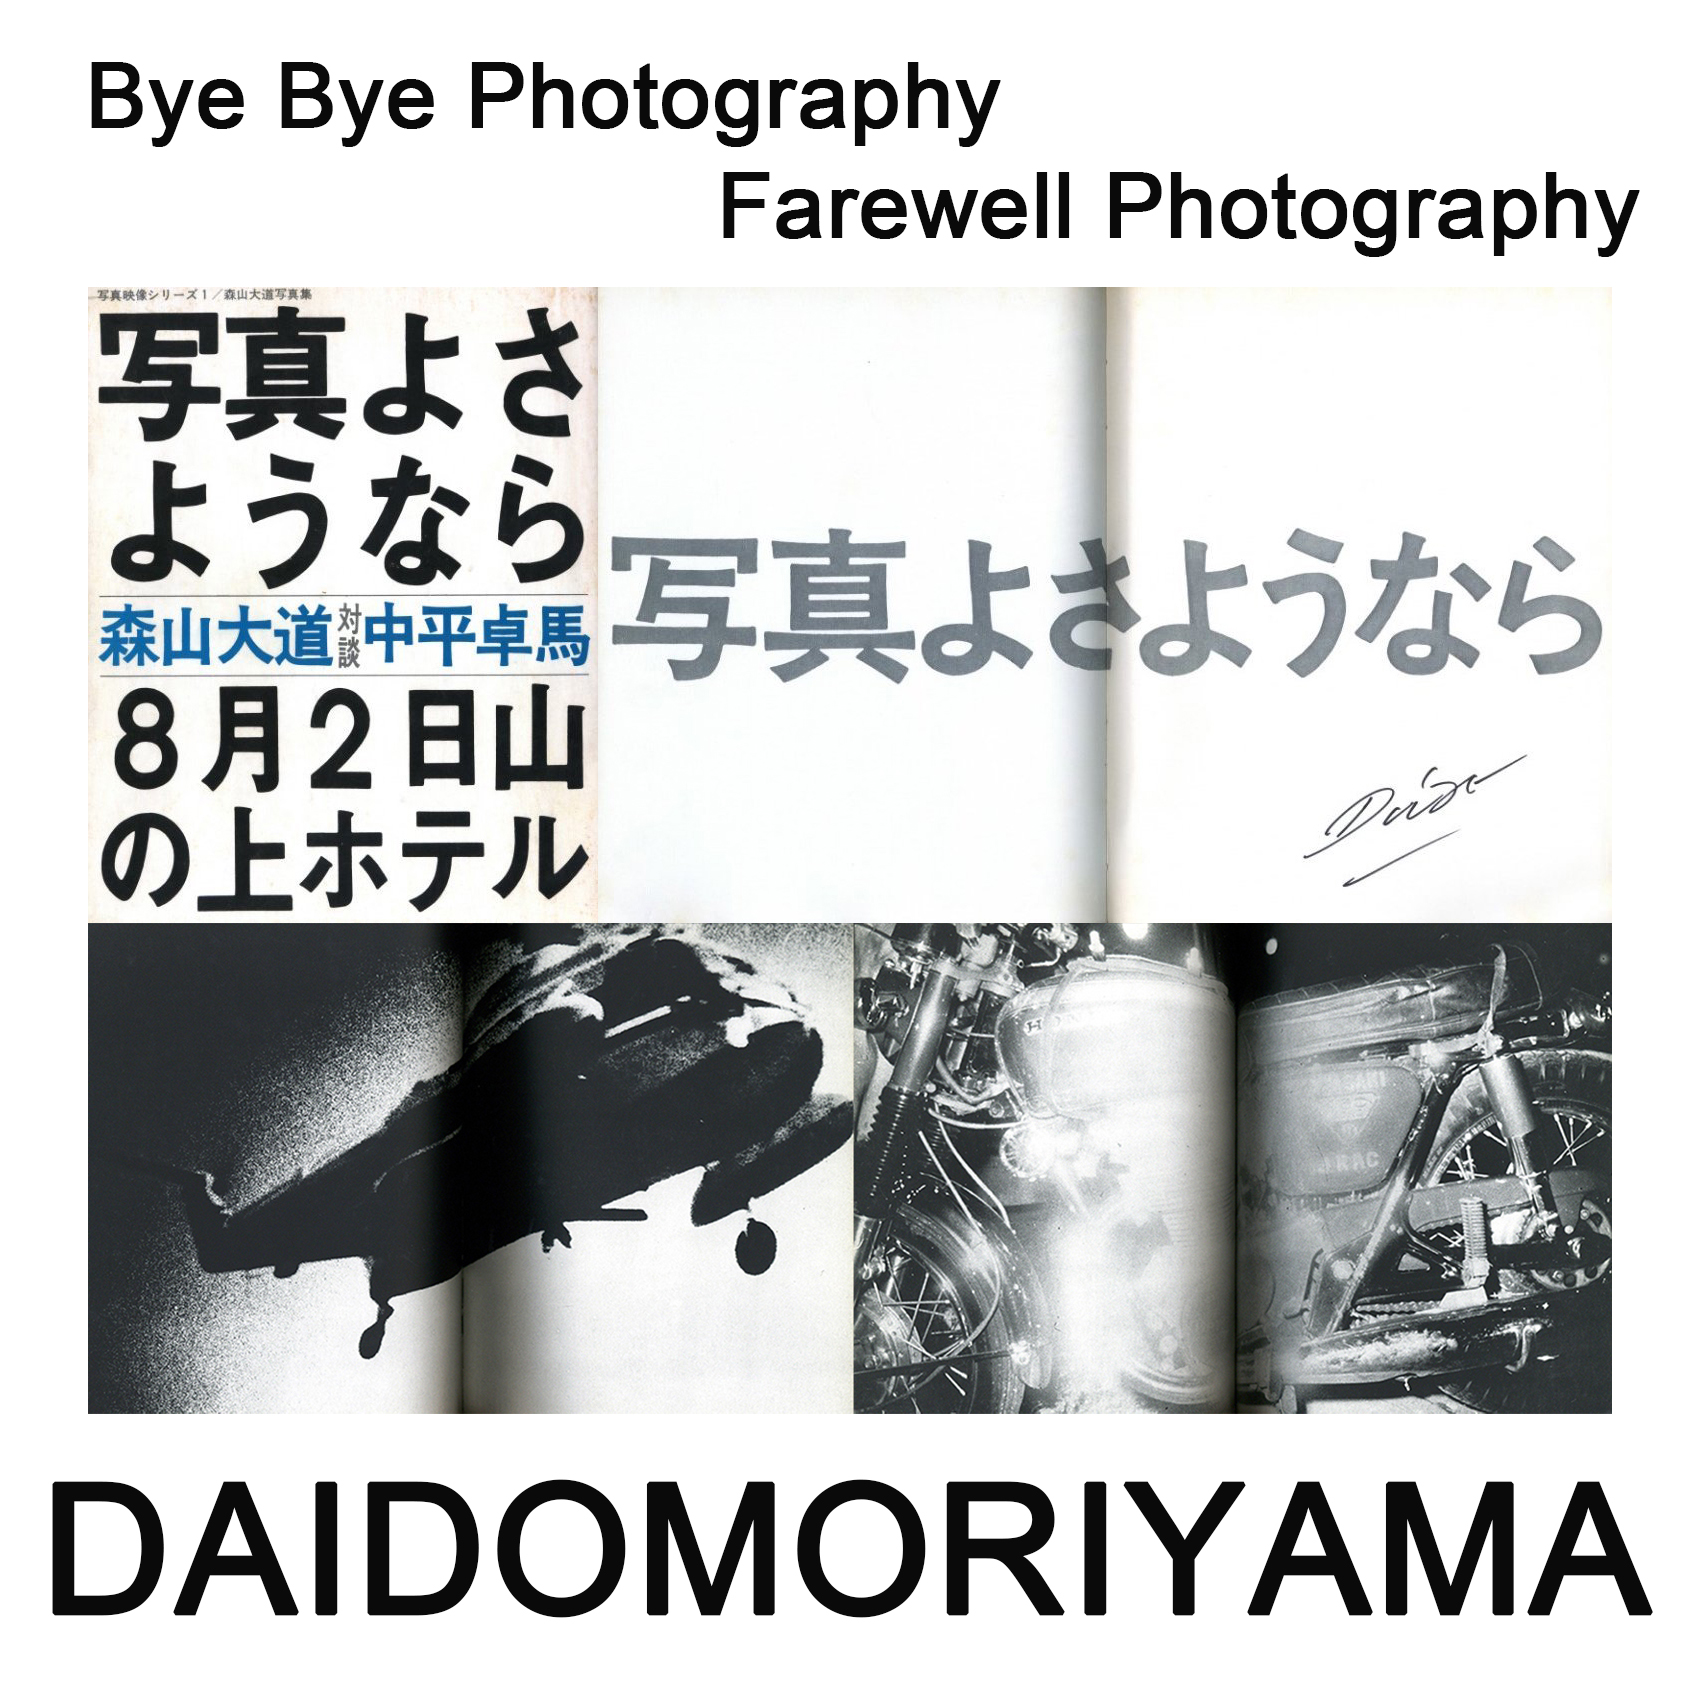 日本売り 森山大道 写真よさようなら 復刻版 Daido Moriyama 直筆 